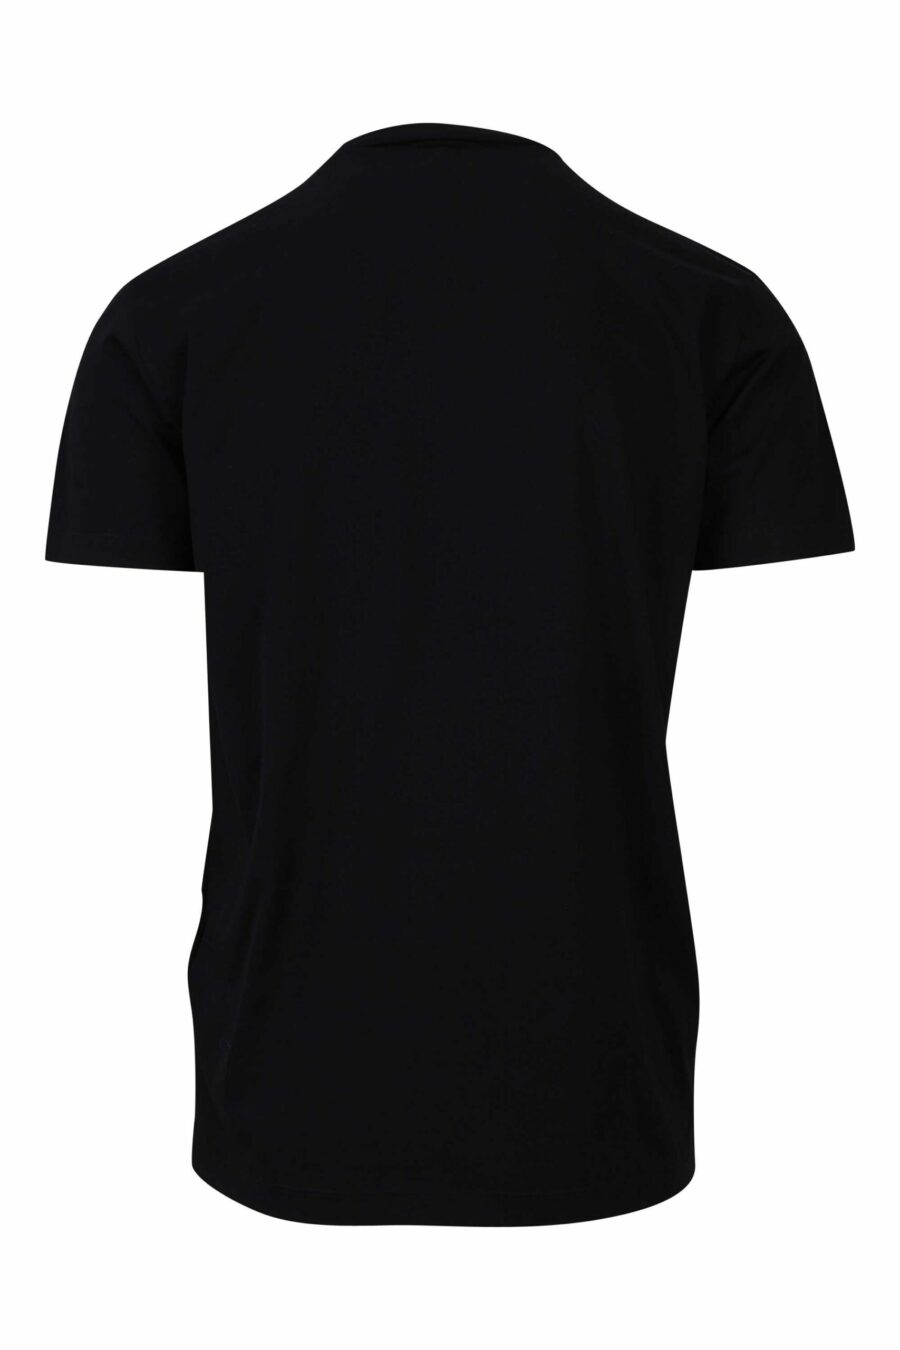 Schwarzes T-Shirt mit blauem und rotem Gothic-Maxilogo - 8054148085940 1 1 skaliert